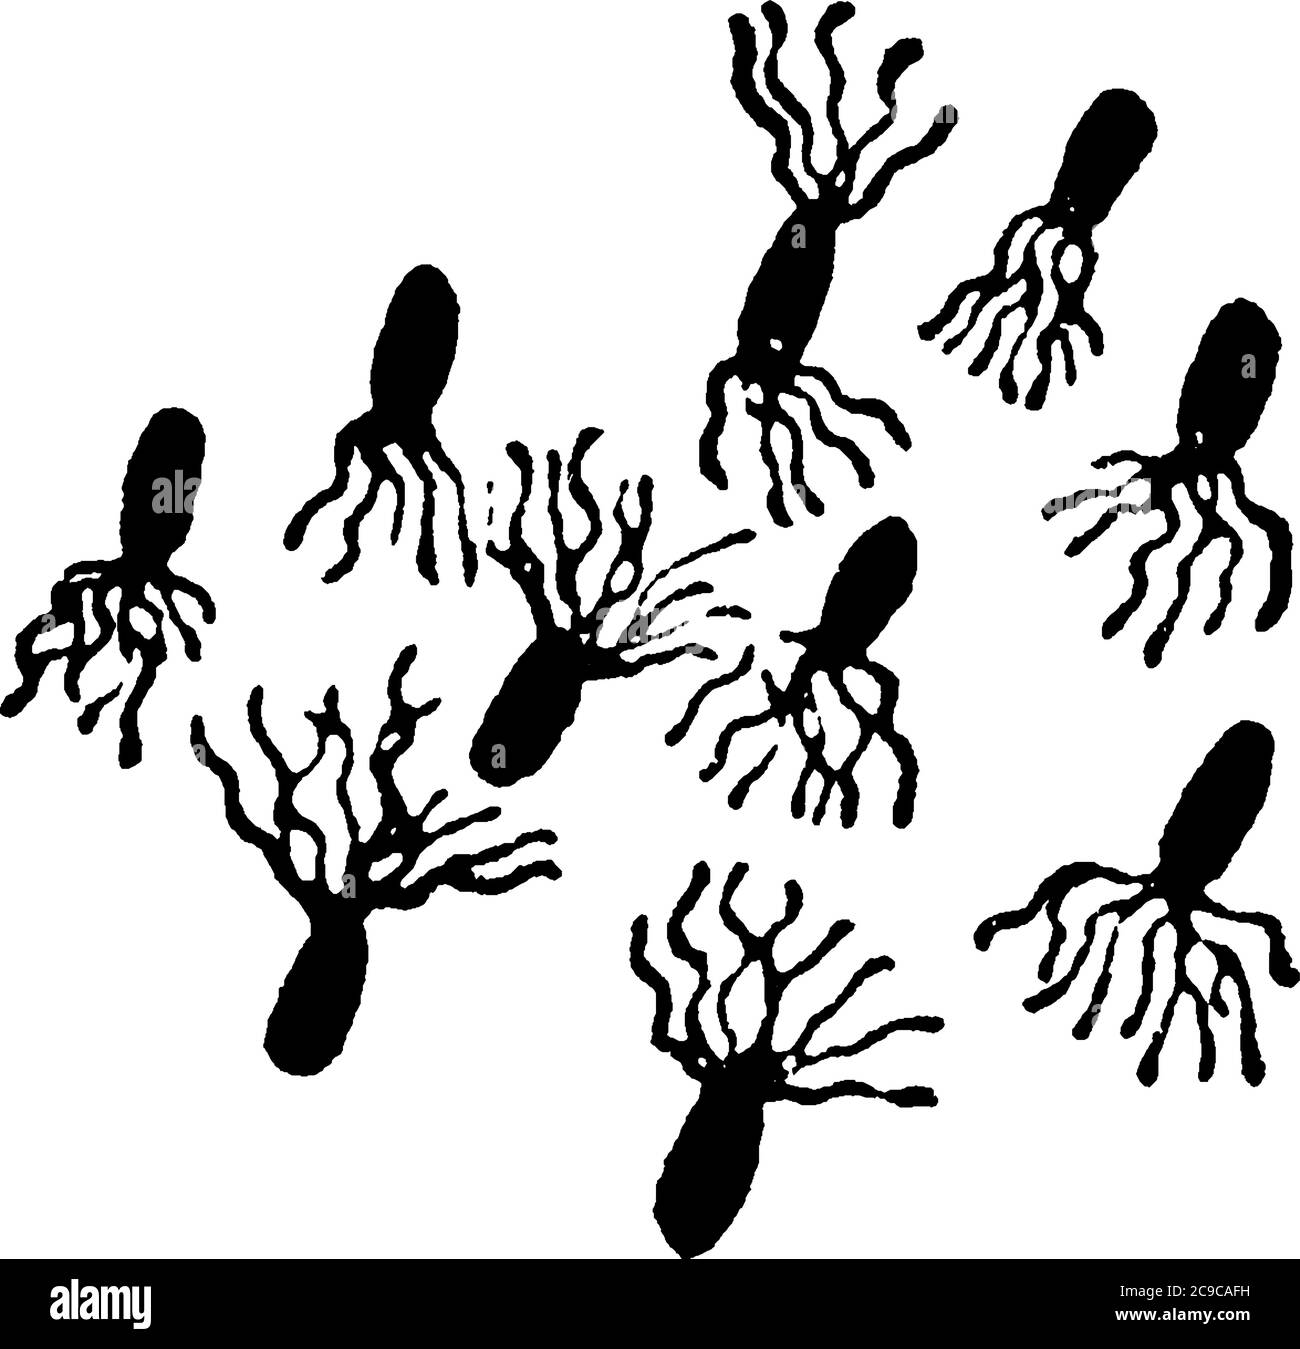 Eine typische Darstellung der motilen und stabförmigen Bakterien, Pseudomonas pyocyanea, eine Form von Bakterien, die Zilien und ihre Anordnung zeigen, vinta Stock Vektor